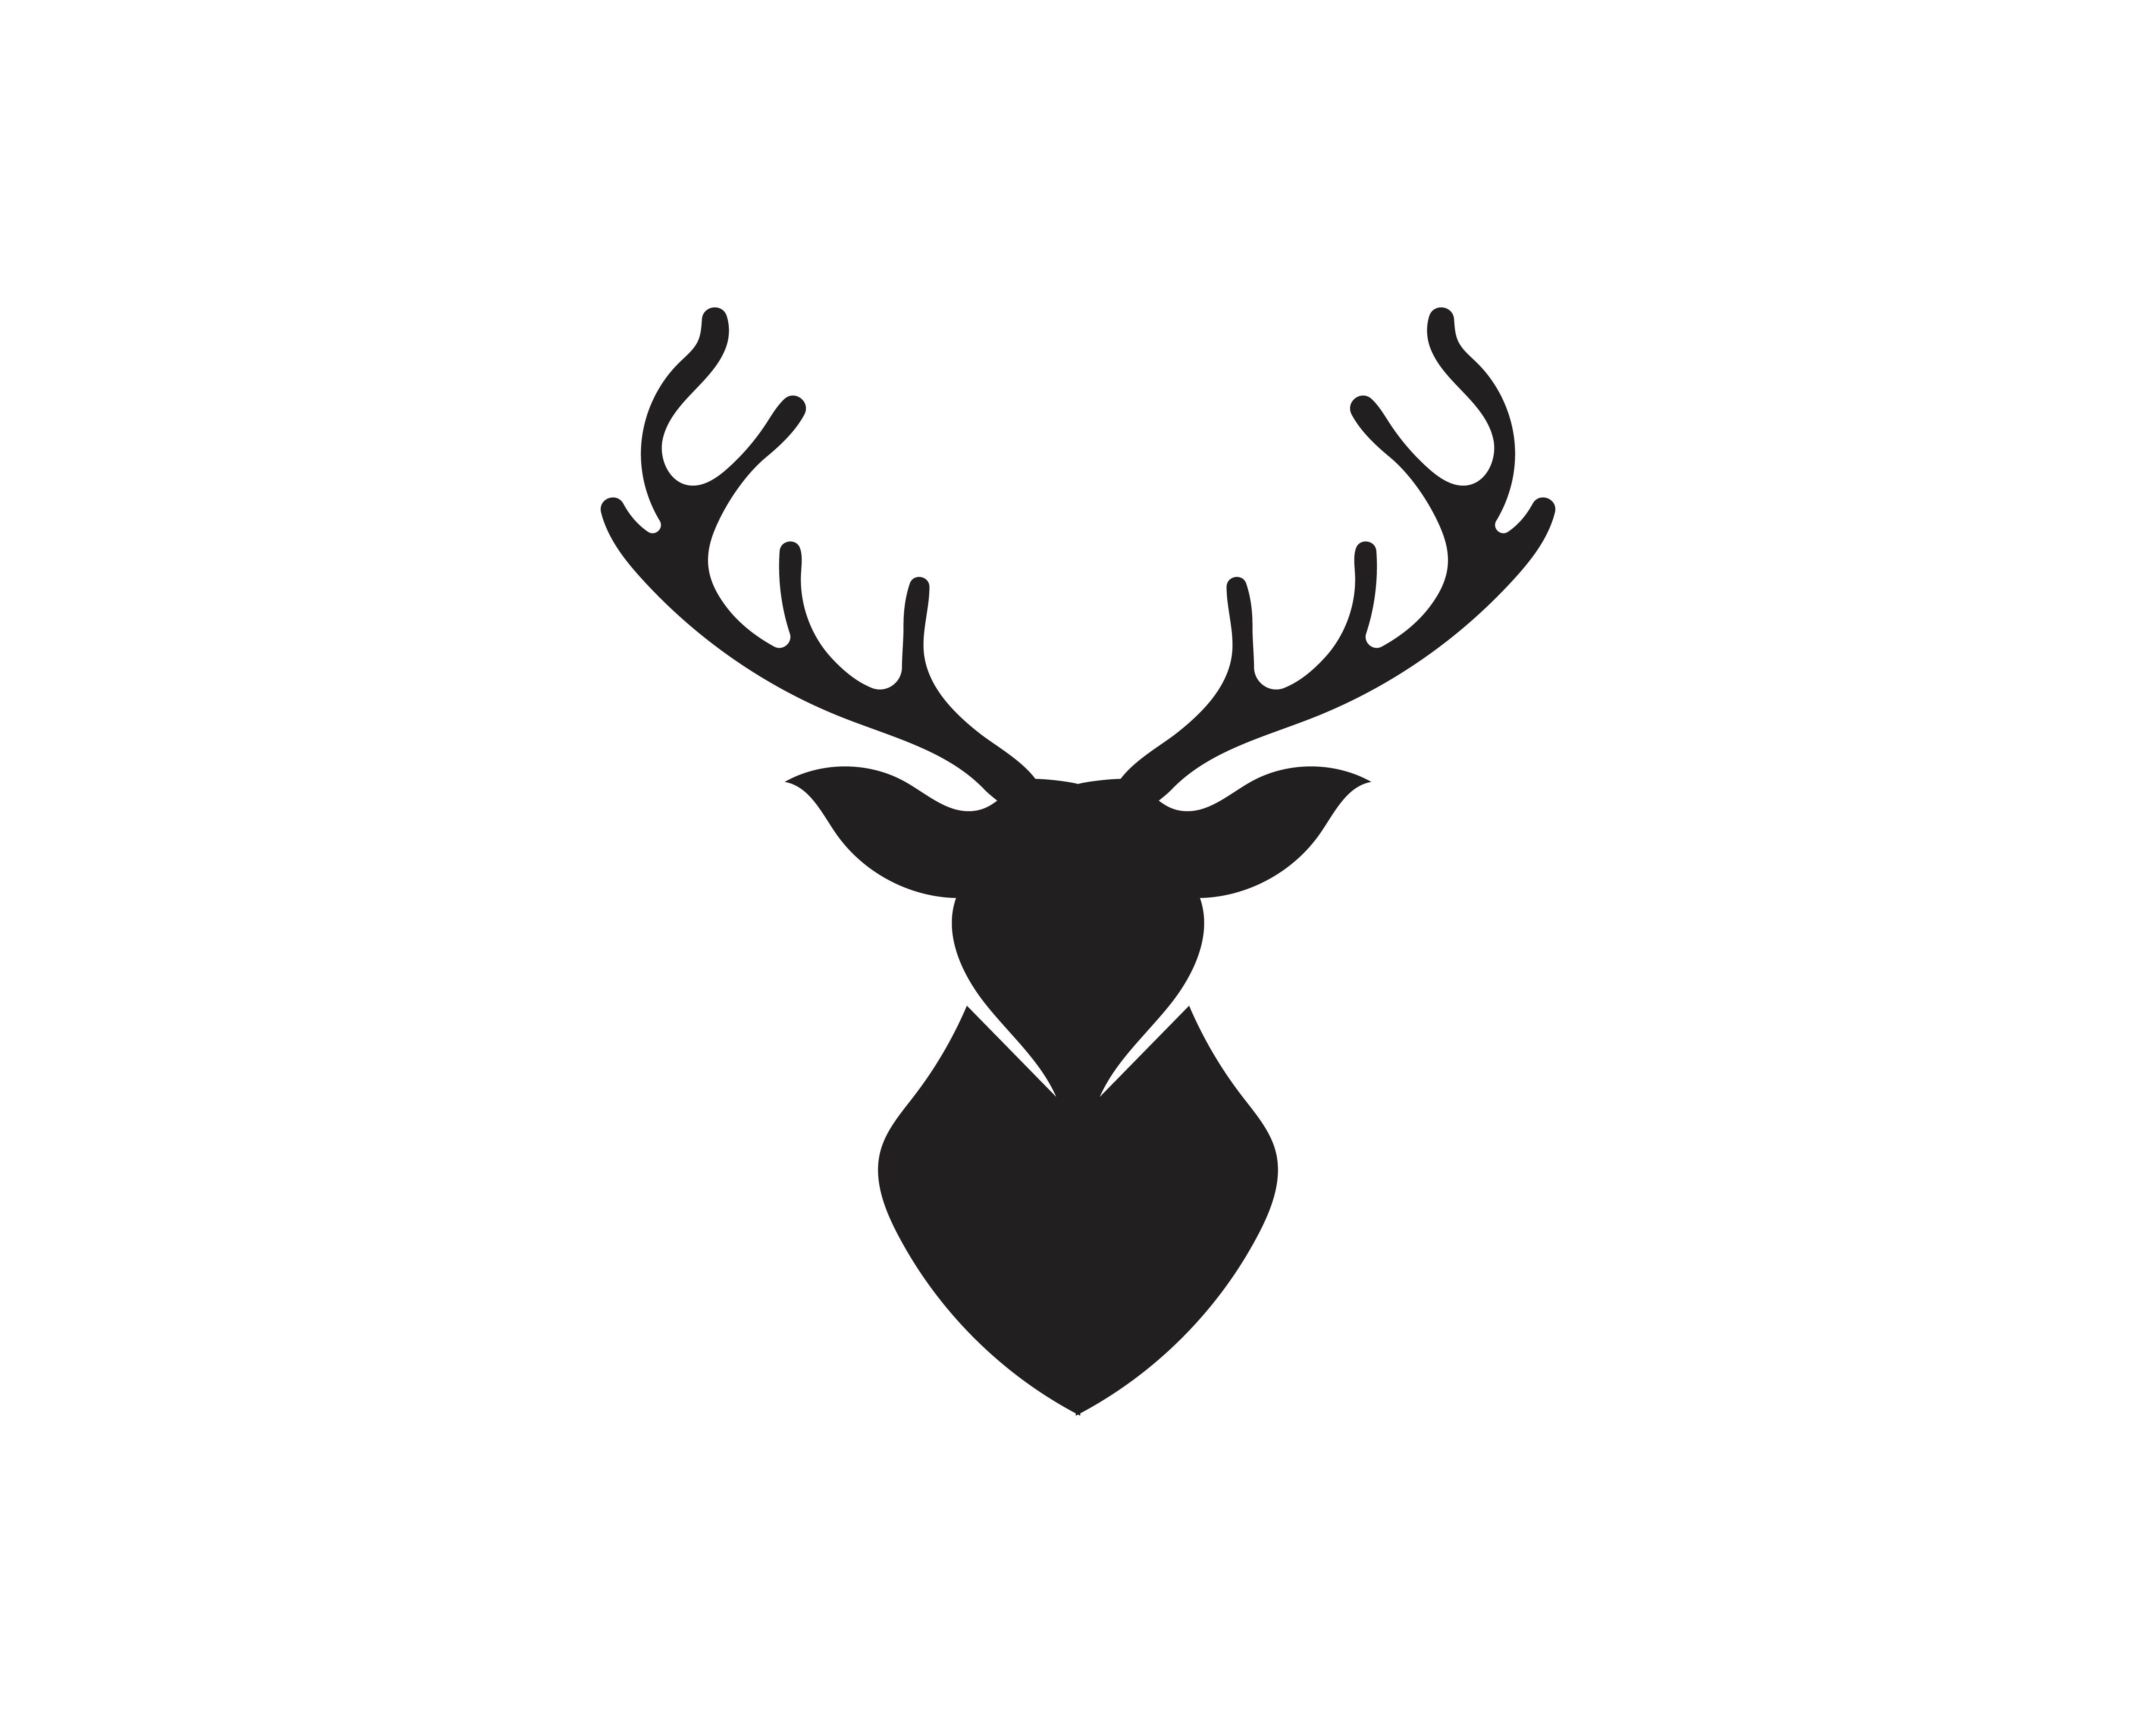 Download Deer vector icon illustration design - Download Free Vectors, Clipart Graphics & Vector Art